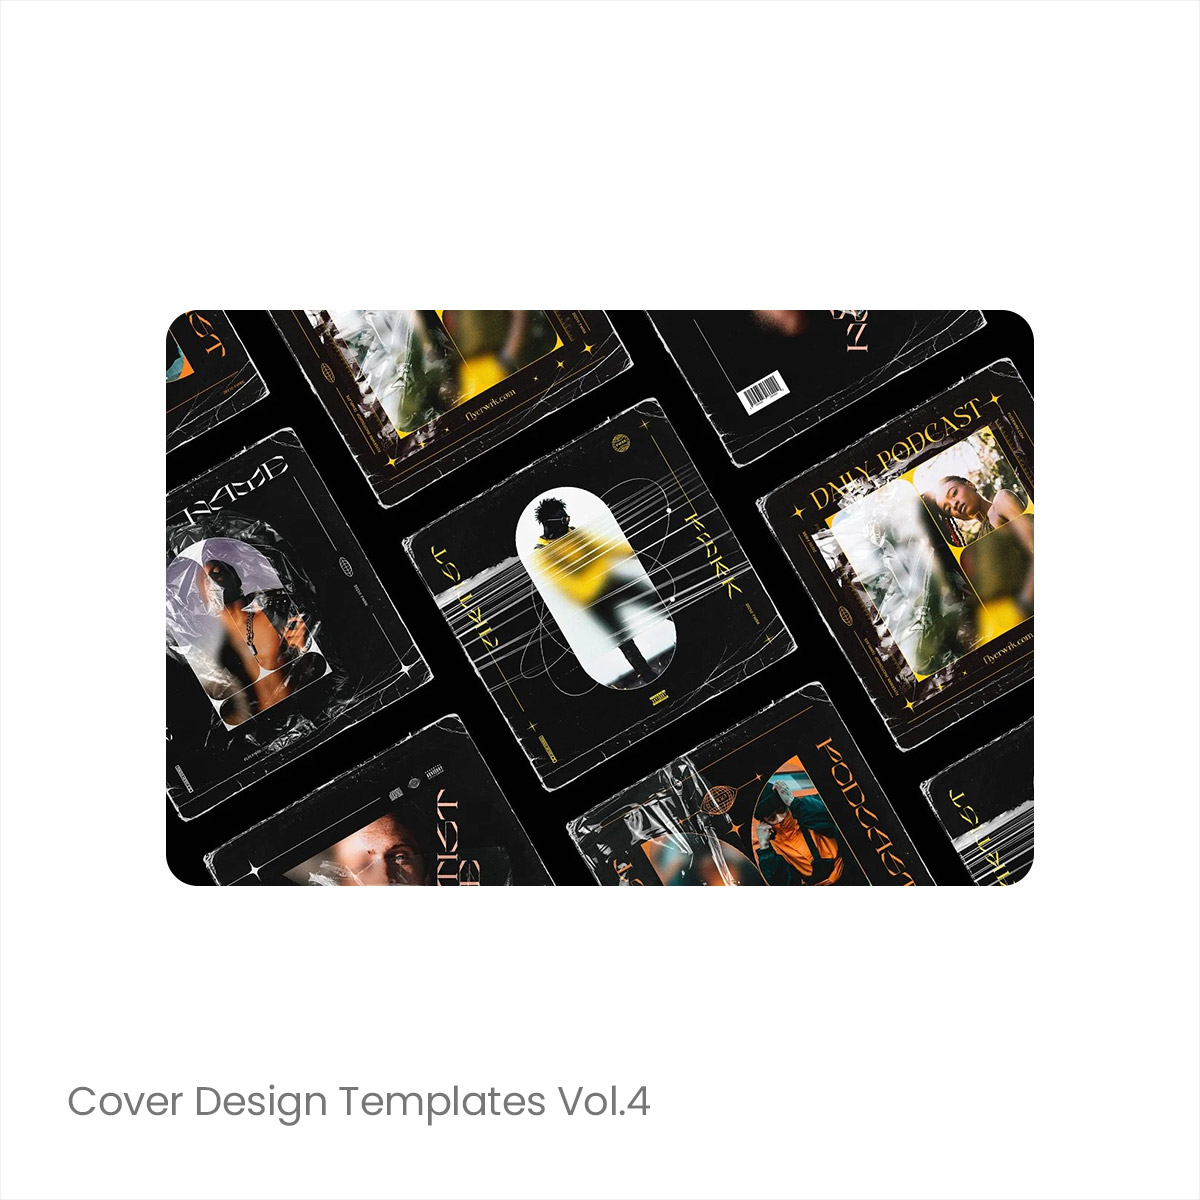 5款潮流复古嘻哈街头音乐专辑封面设计作品贴图ps样机素材模板